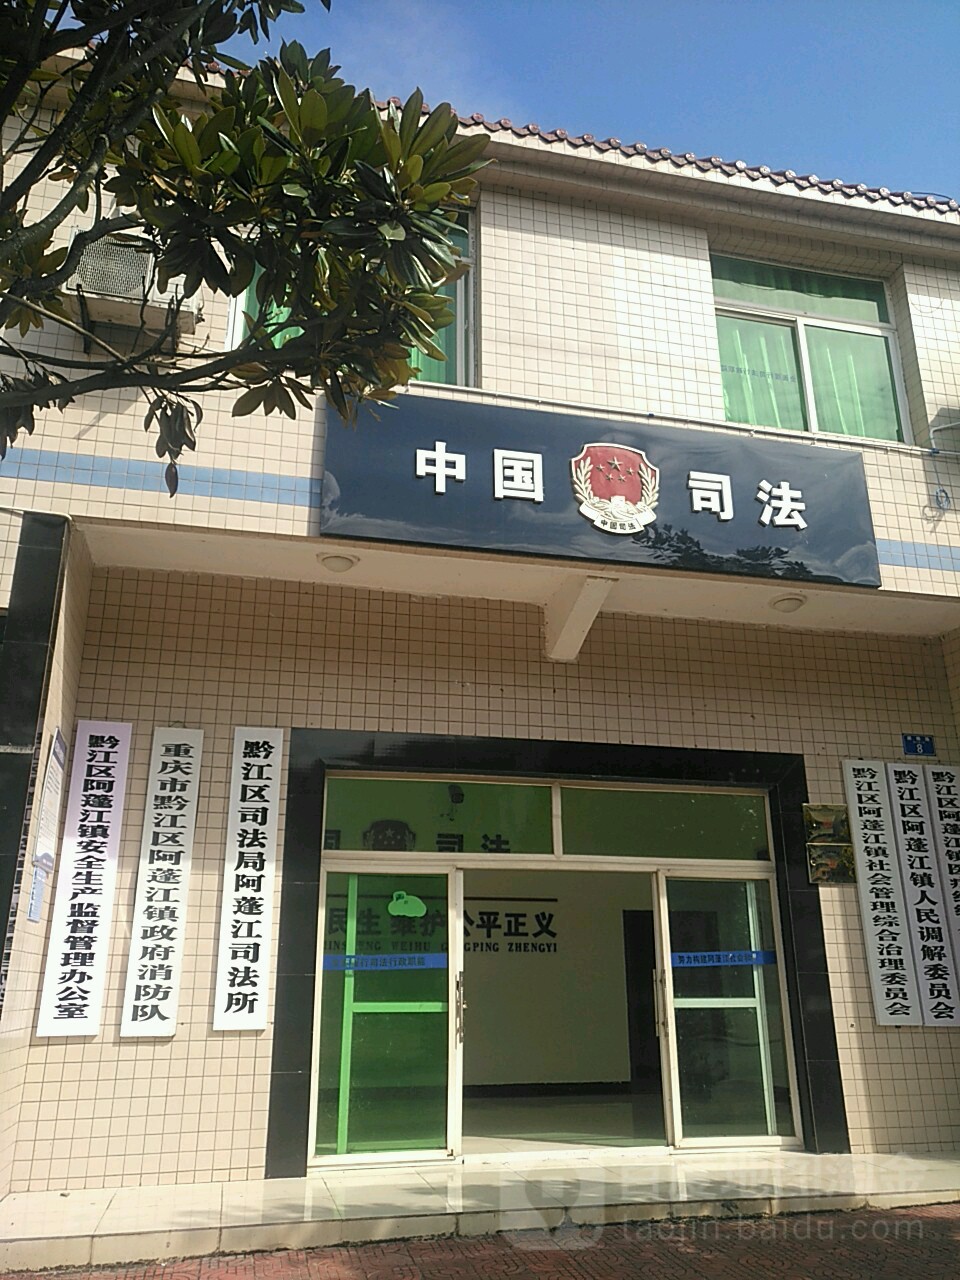 黔江区司法局(阿蓬江司法所)